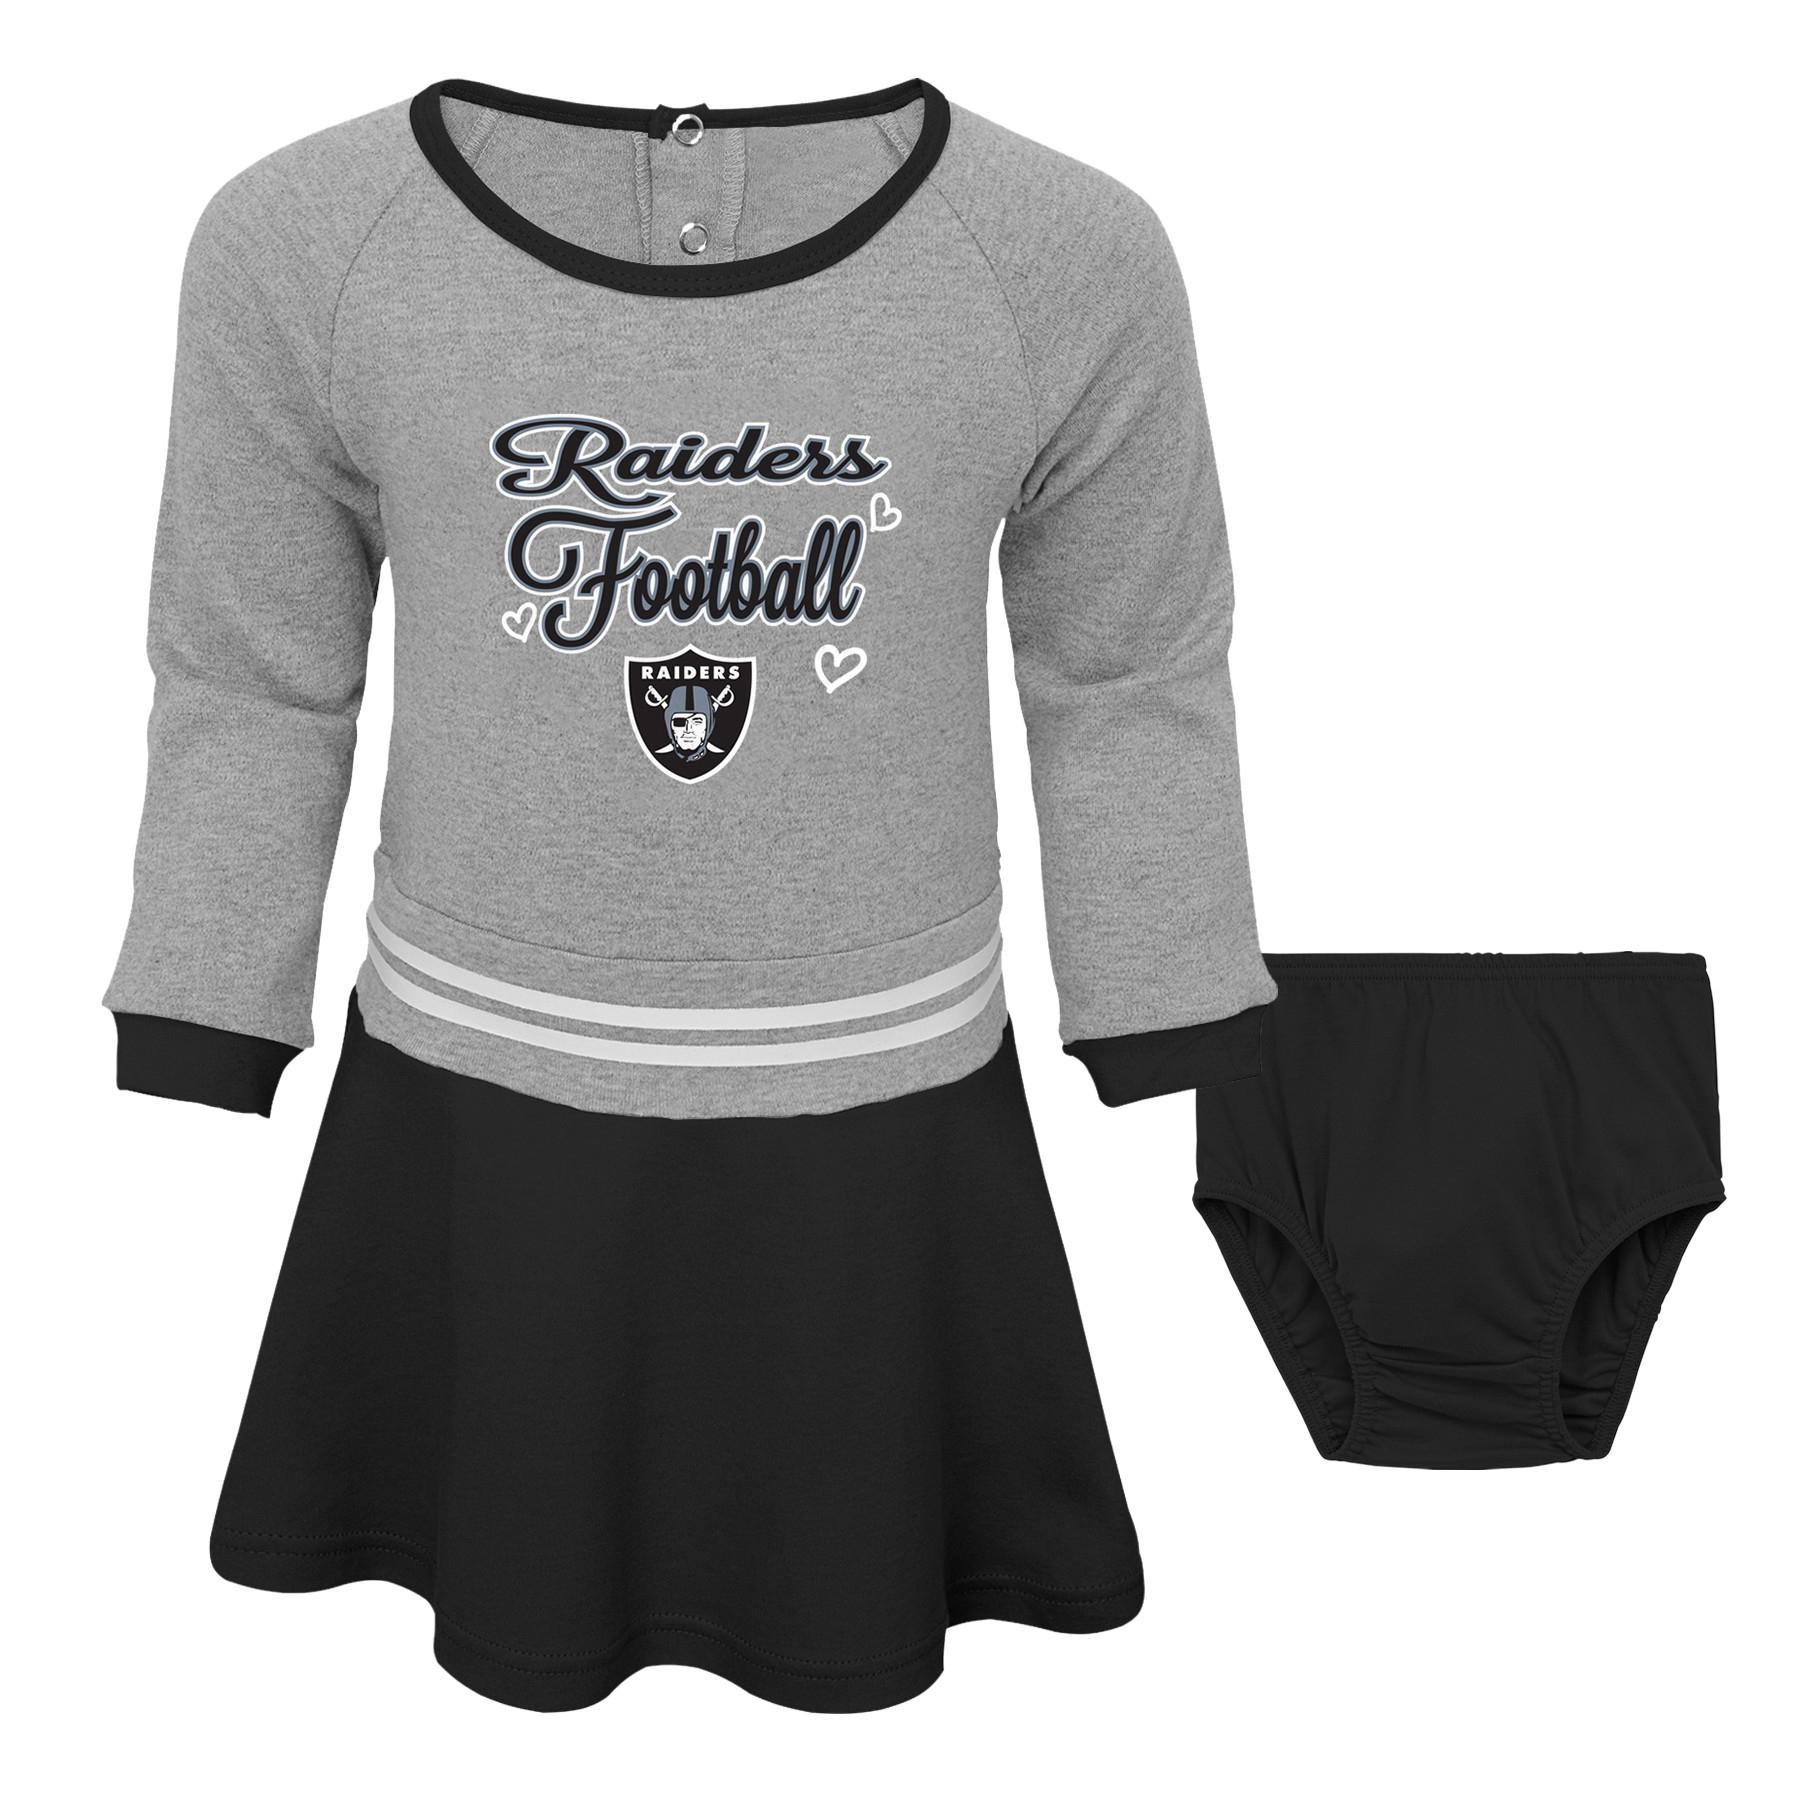 NFL Toddler Girls' Dress & Diaper Cover - Oakland Raiders